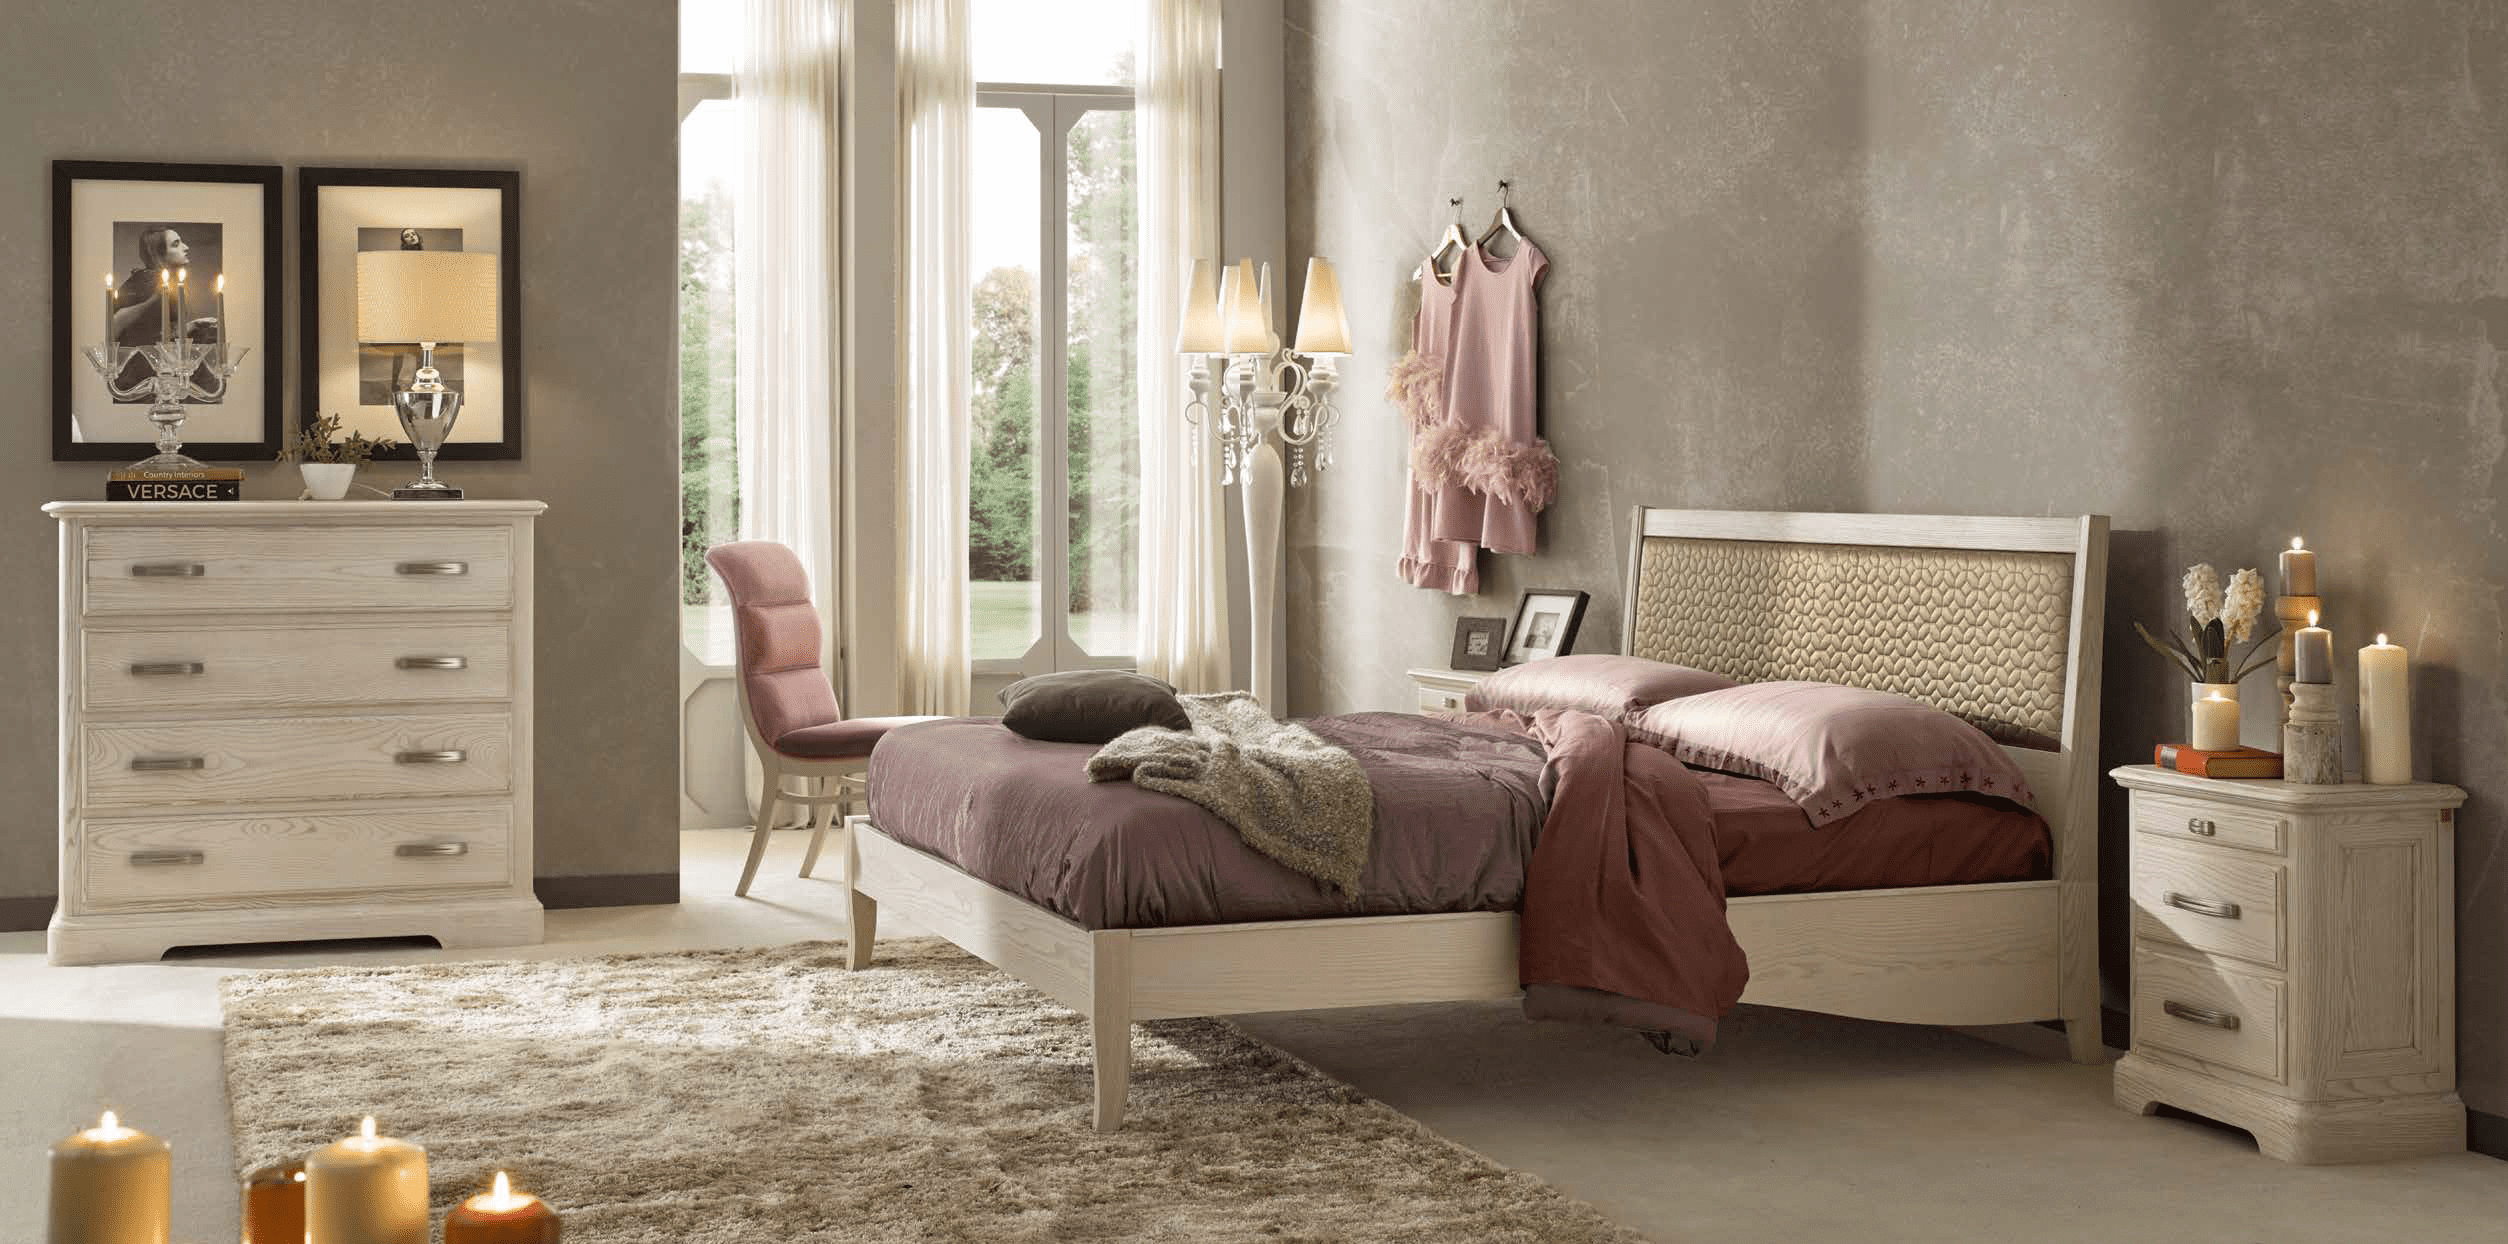 Комплект мебели для спальни из коллекции CLASSICO из Италии